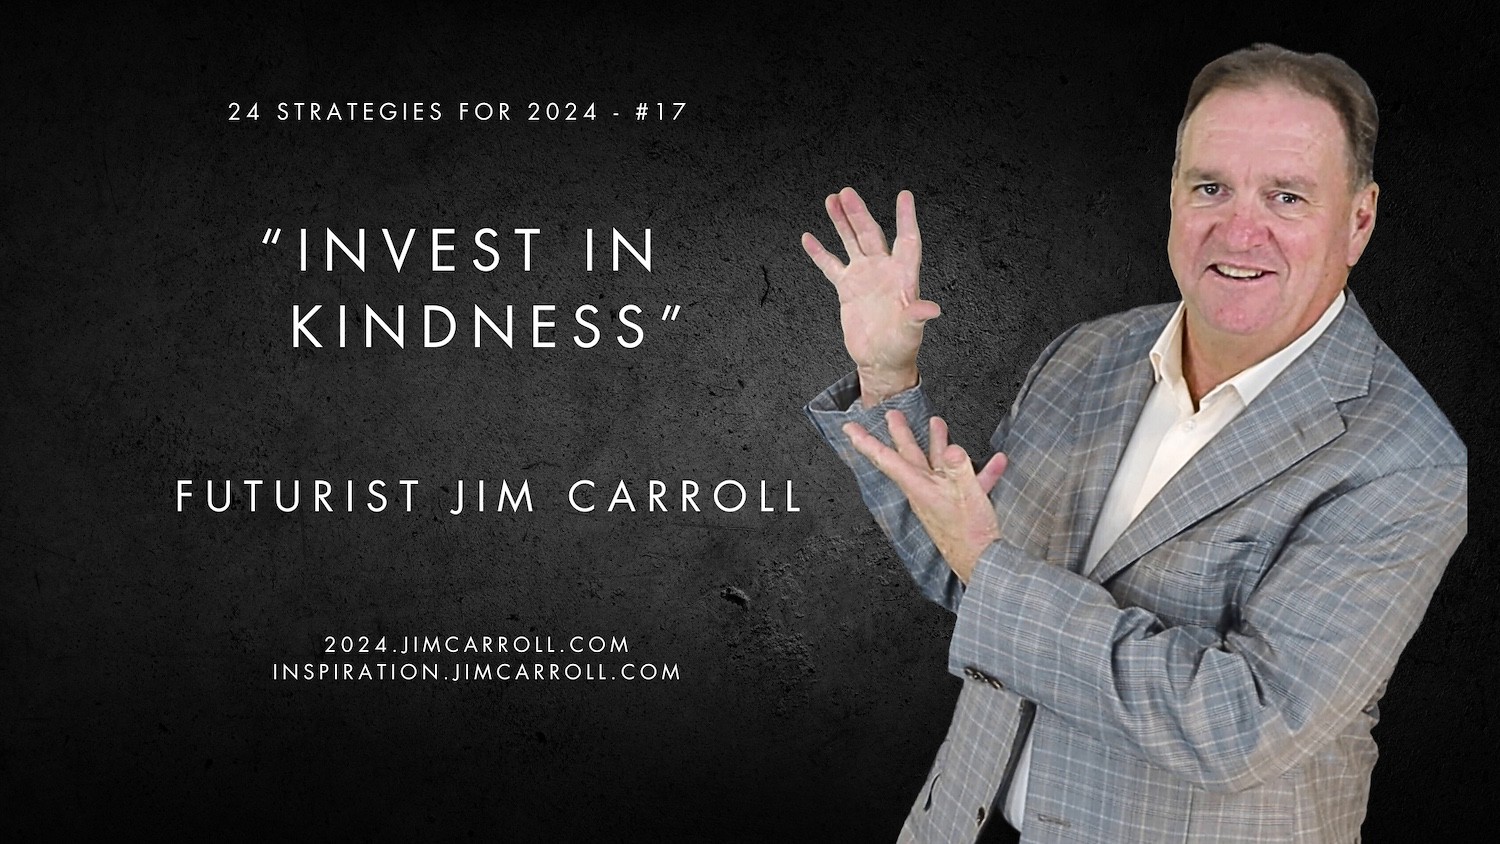 "Invest in kindness" - Futurist Jim Carroll